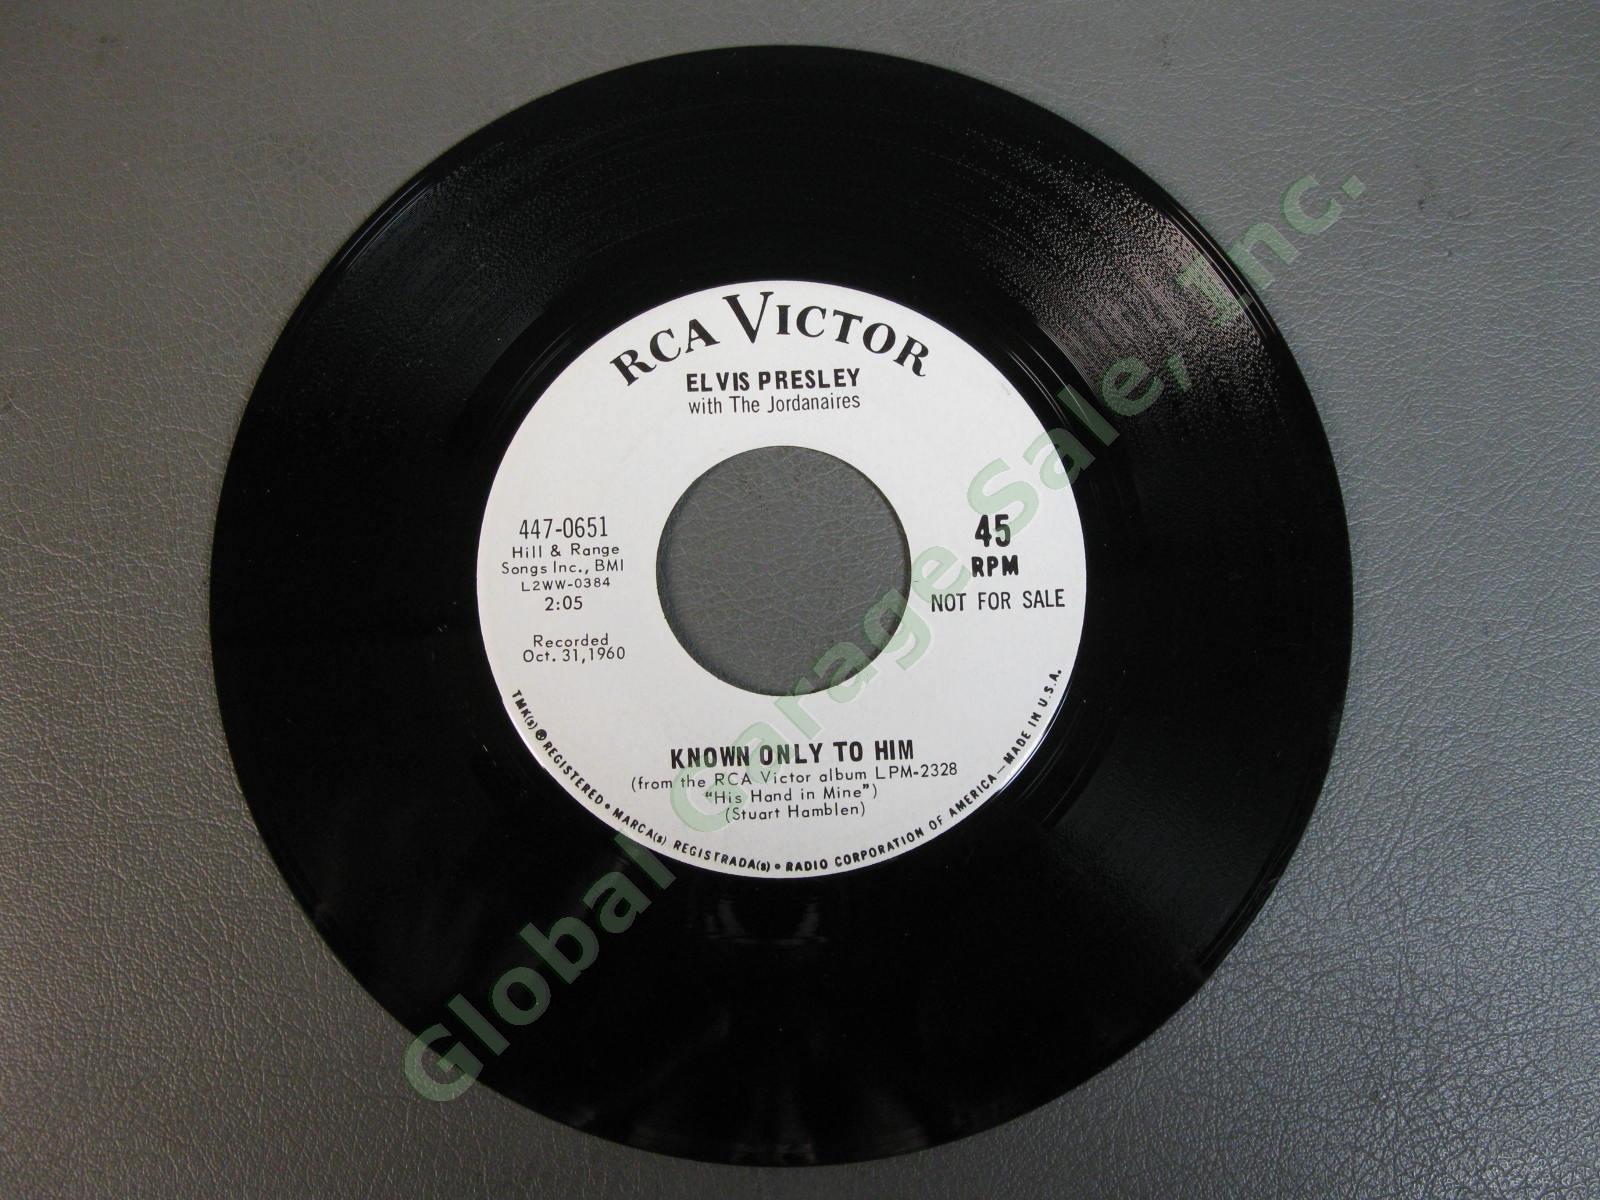 Elvis Presley 45RPM 7" White Label PROMO Record Joshua Fit The Battle 447-0651 4